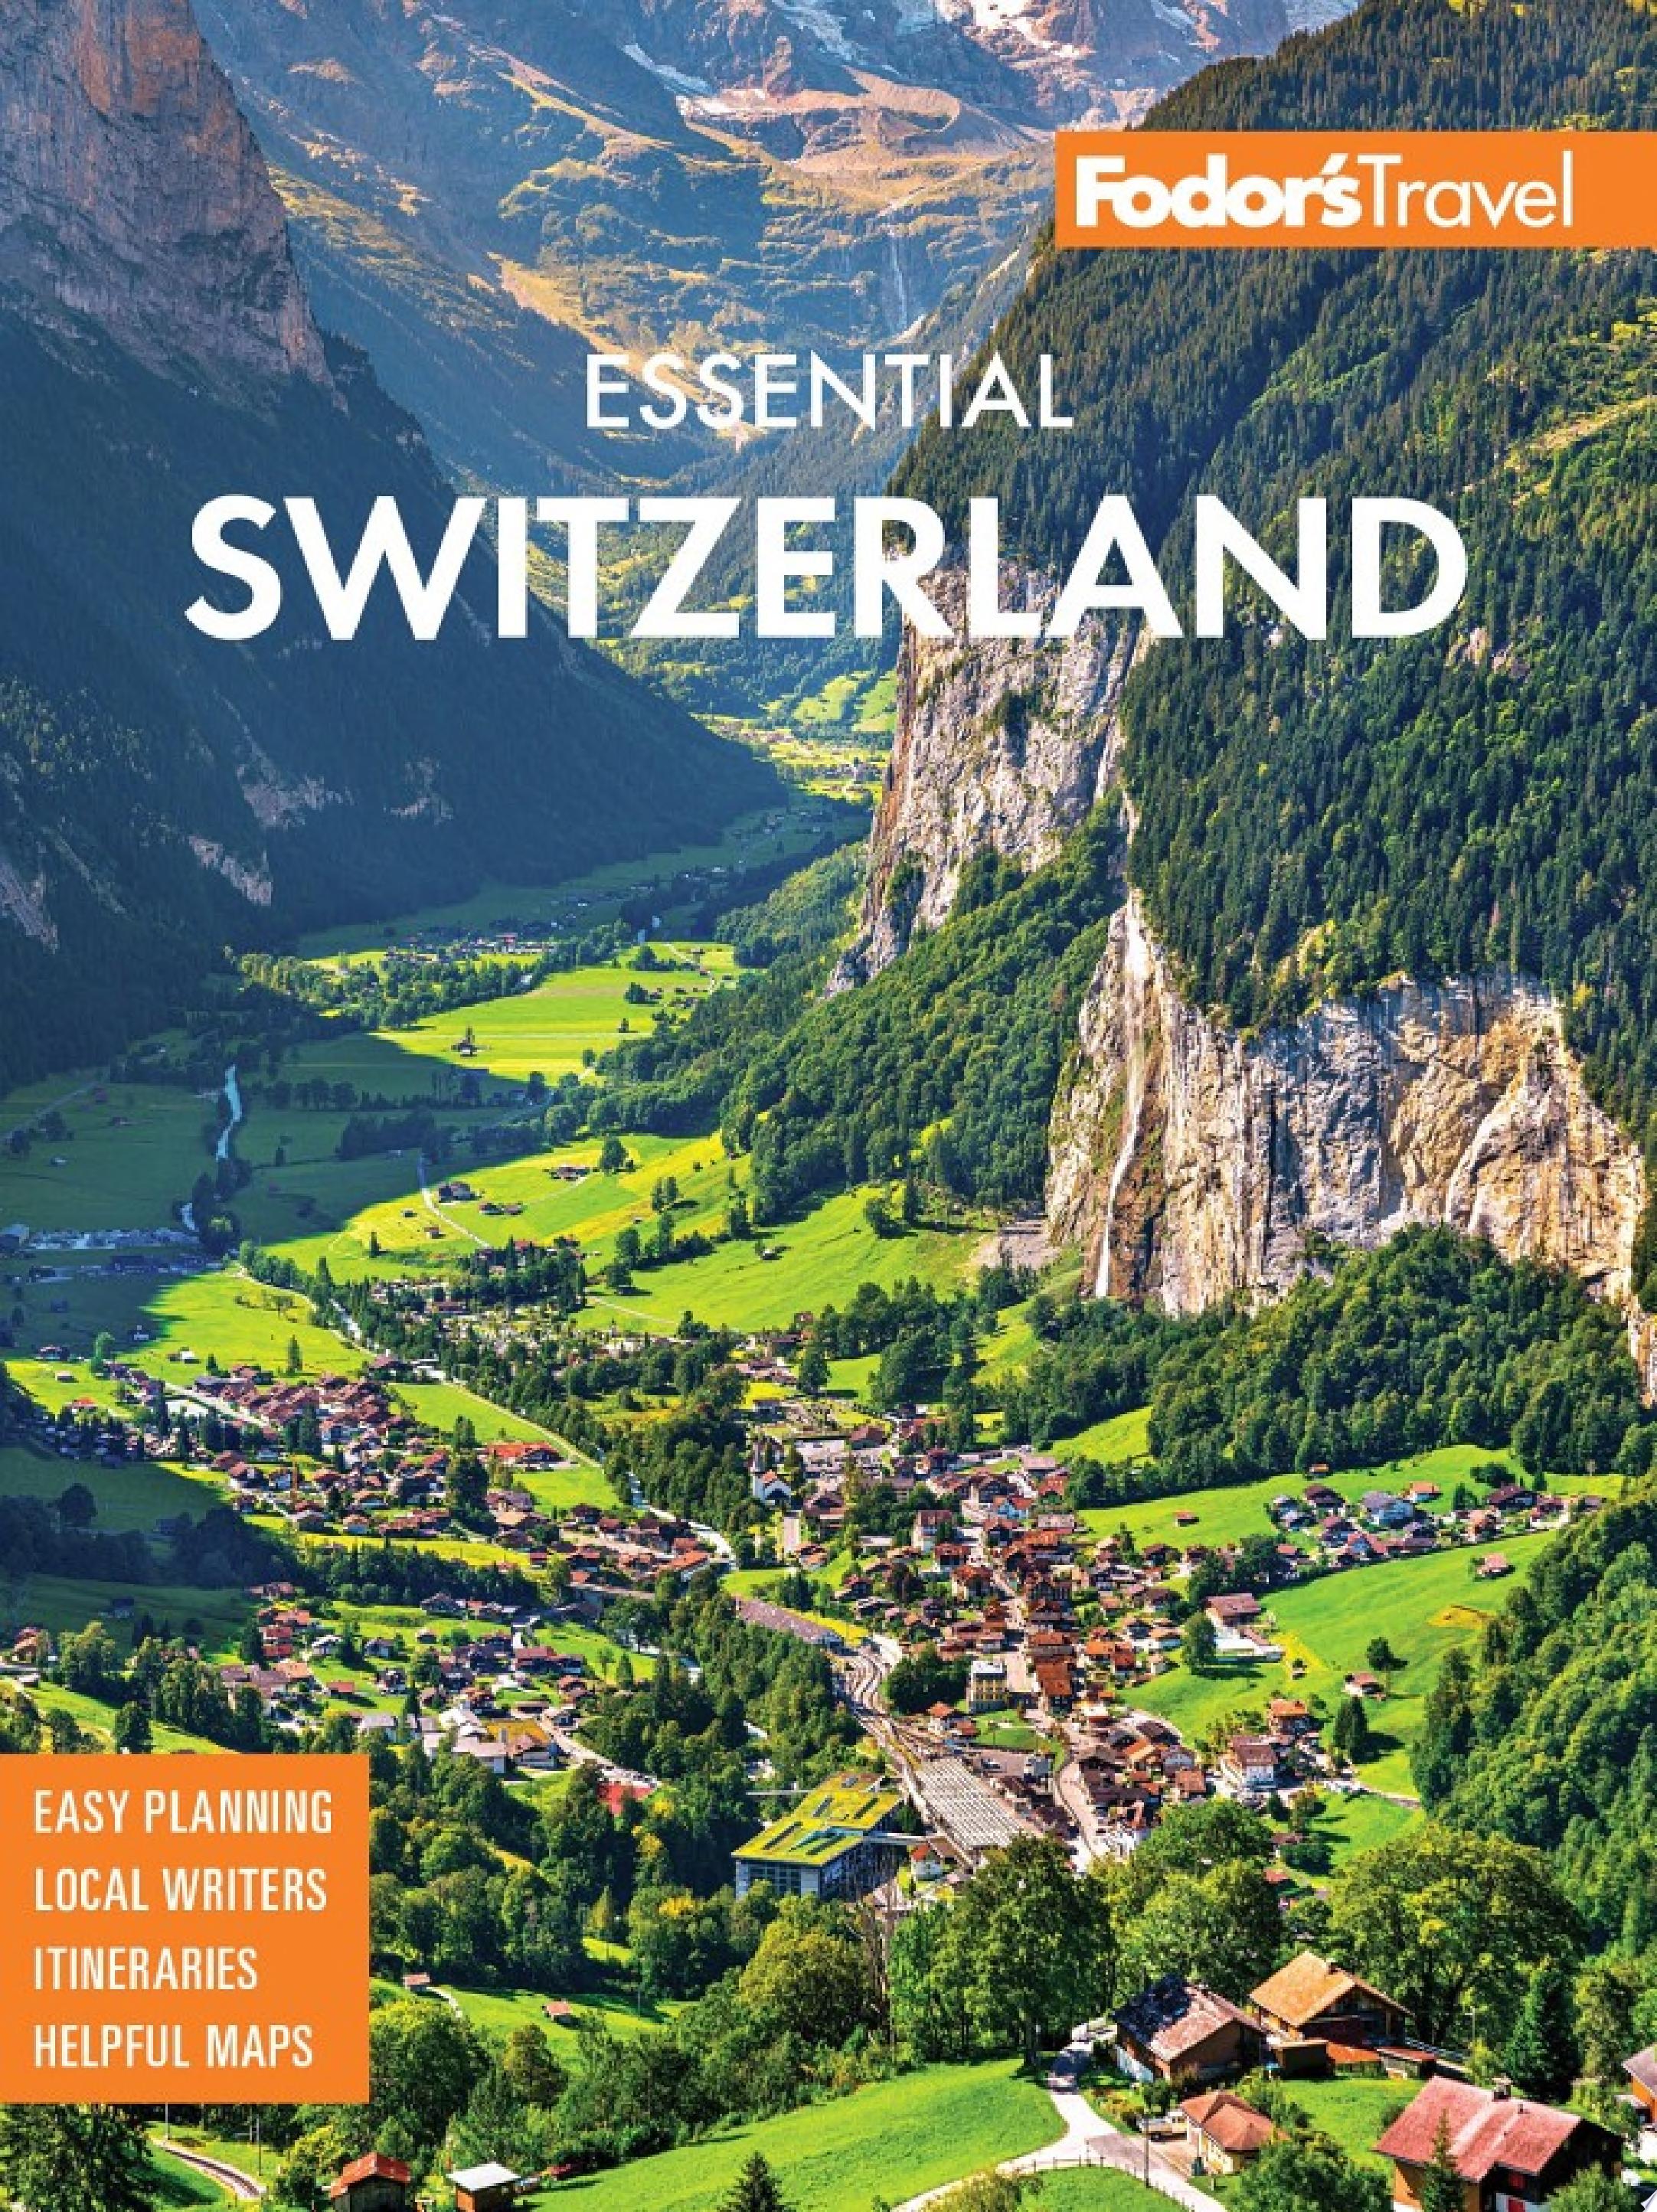 Image for "Fodor's Essential Switzerland"